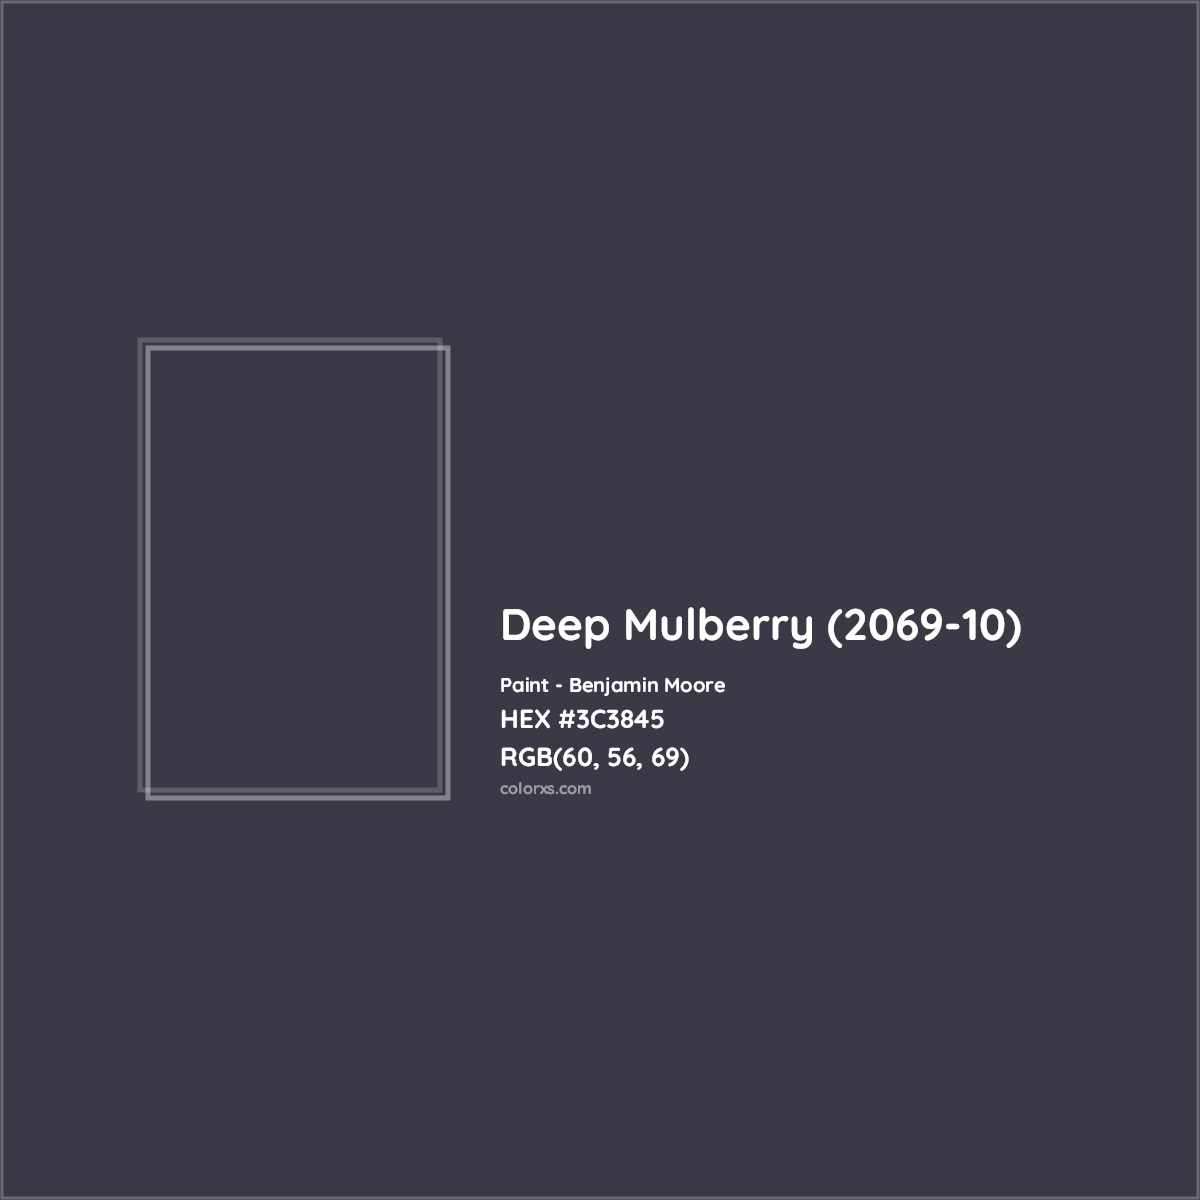 HEX #3C3845 Deep Mulberry (2069-10) Paint Benjamin Moore - Color Code